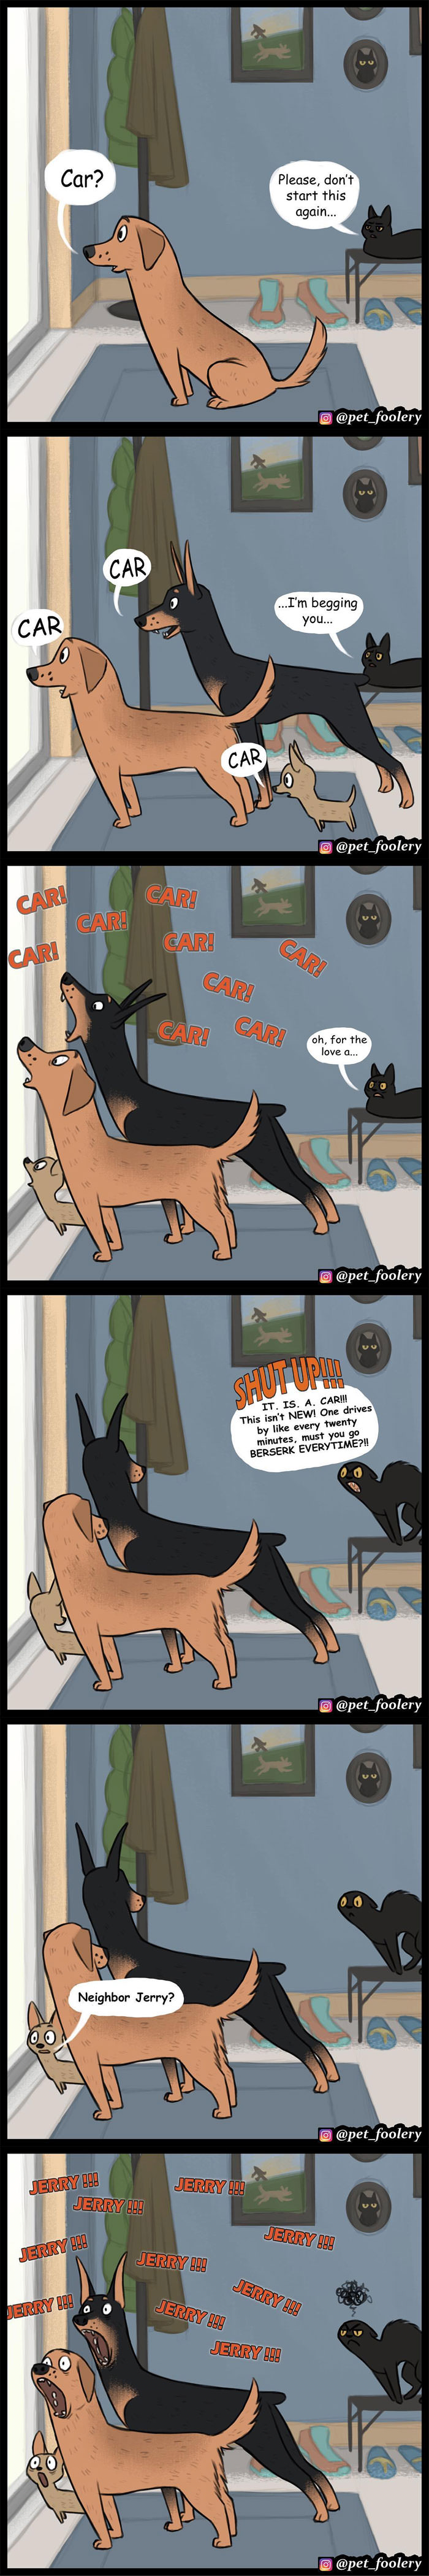 funny pet comics